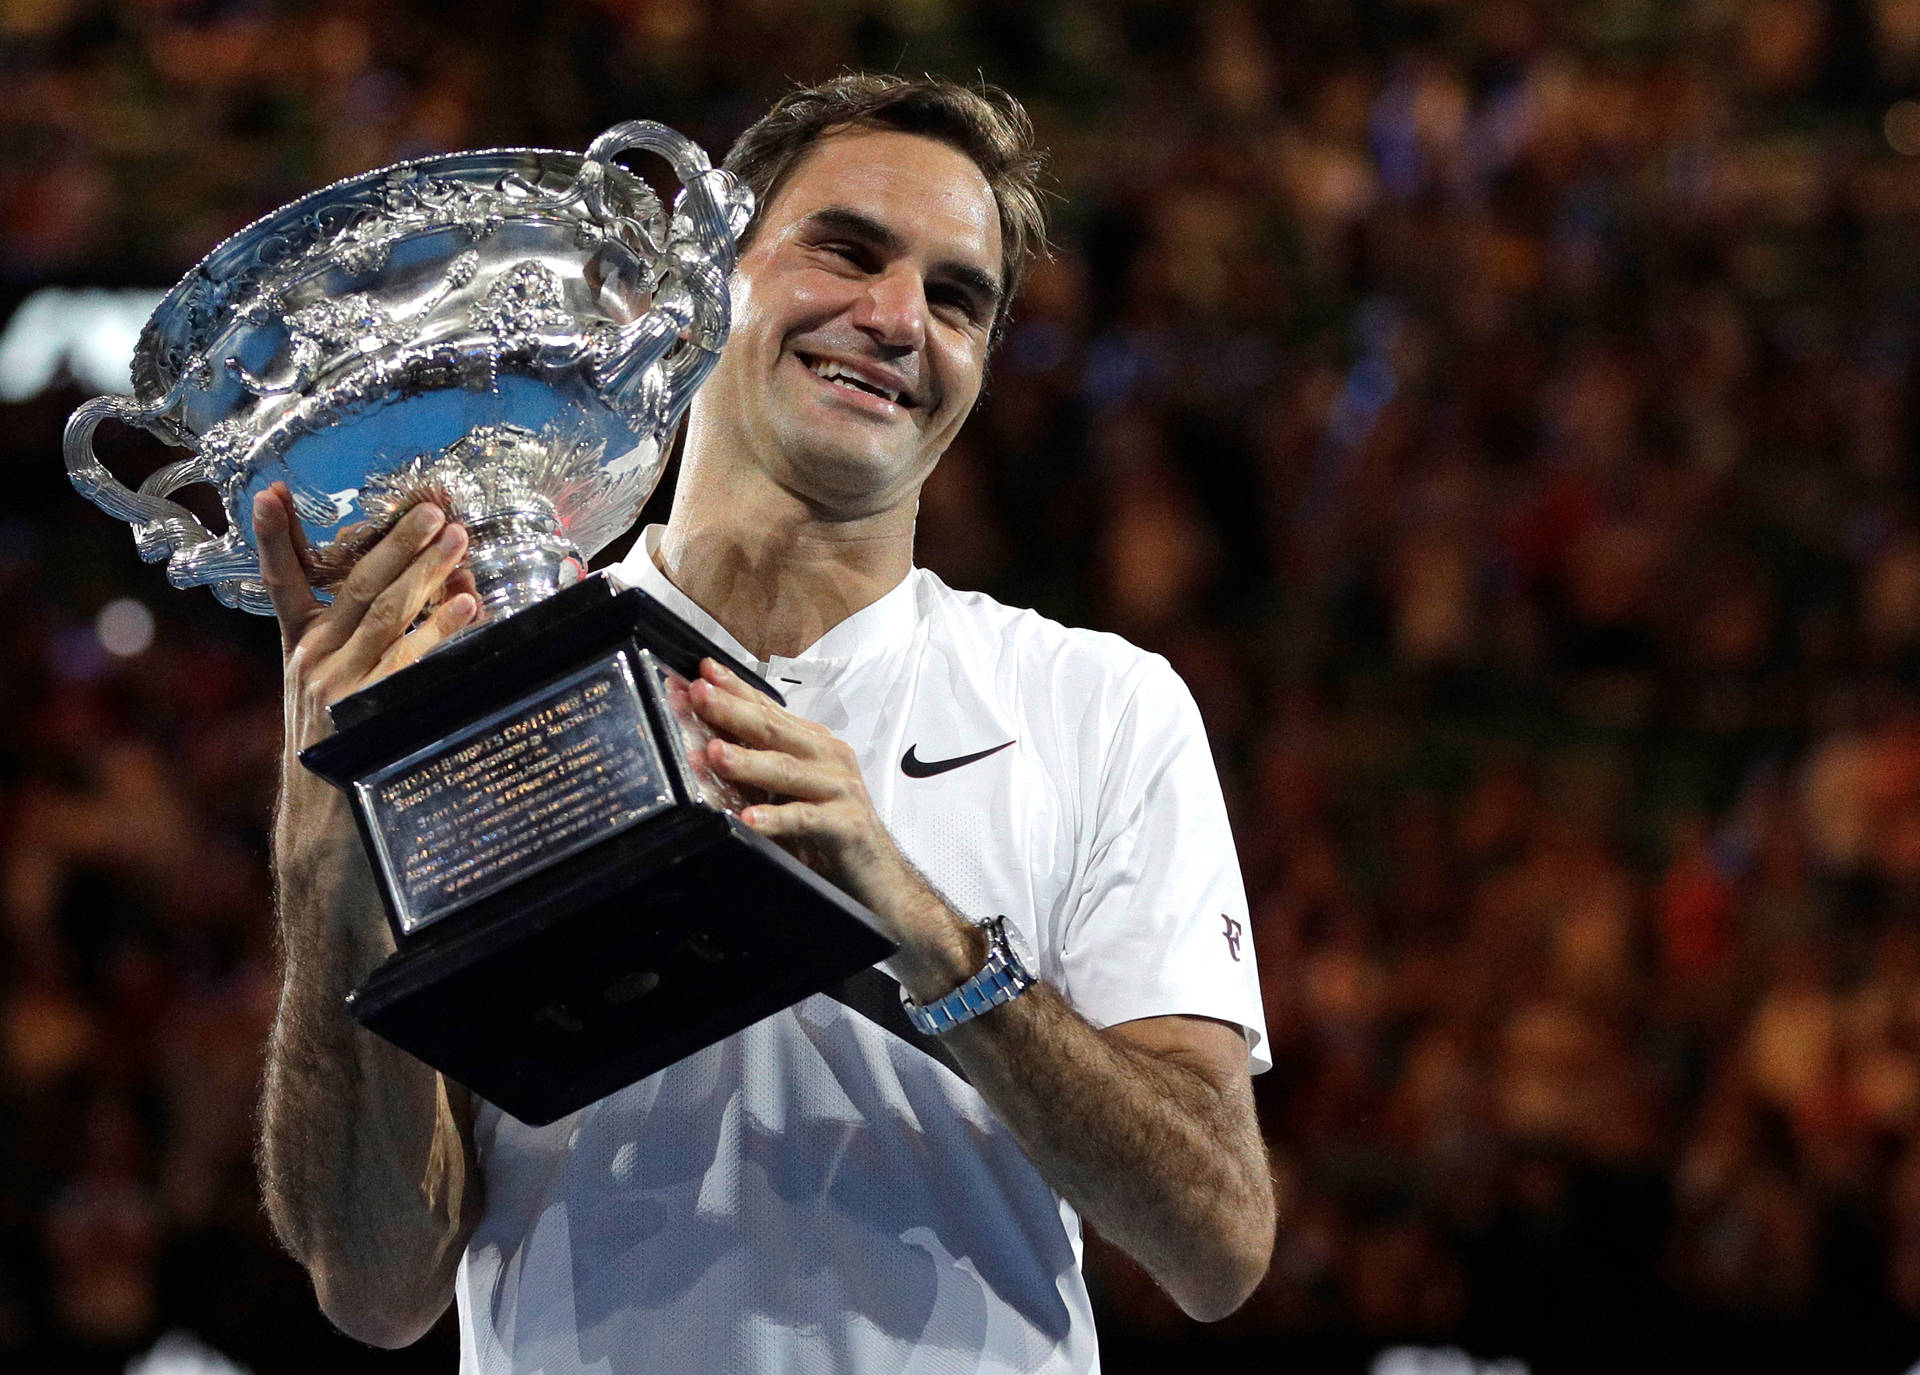 Roger Federer Tennis Champ Wallpaper